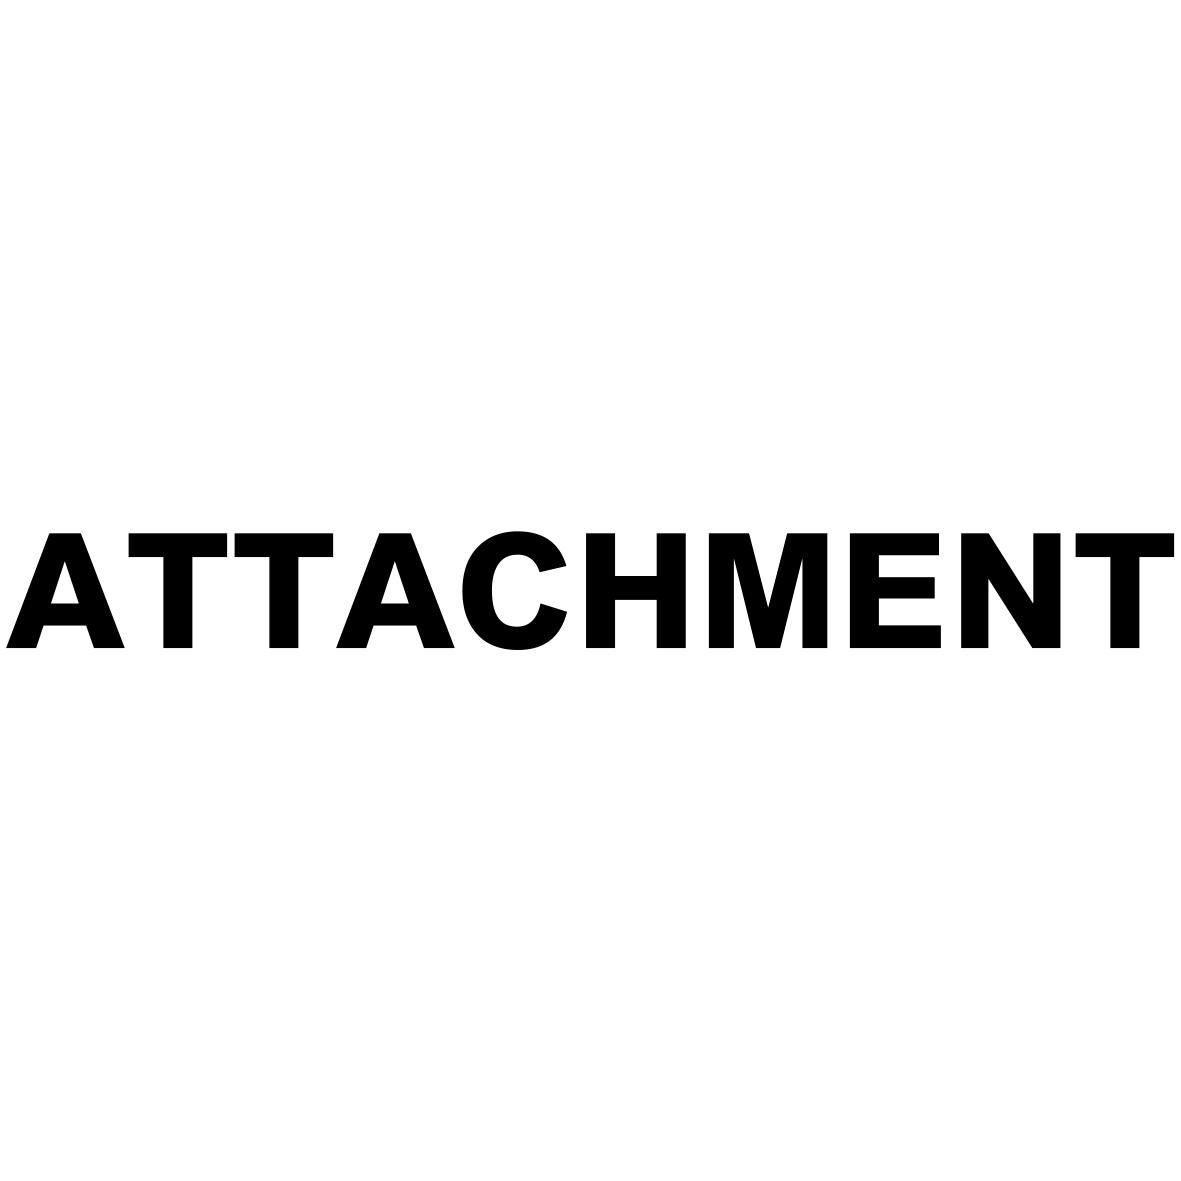 ATTACHMENT